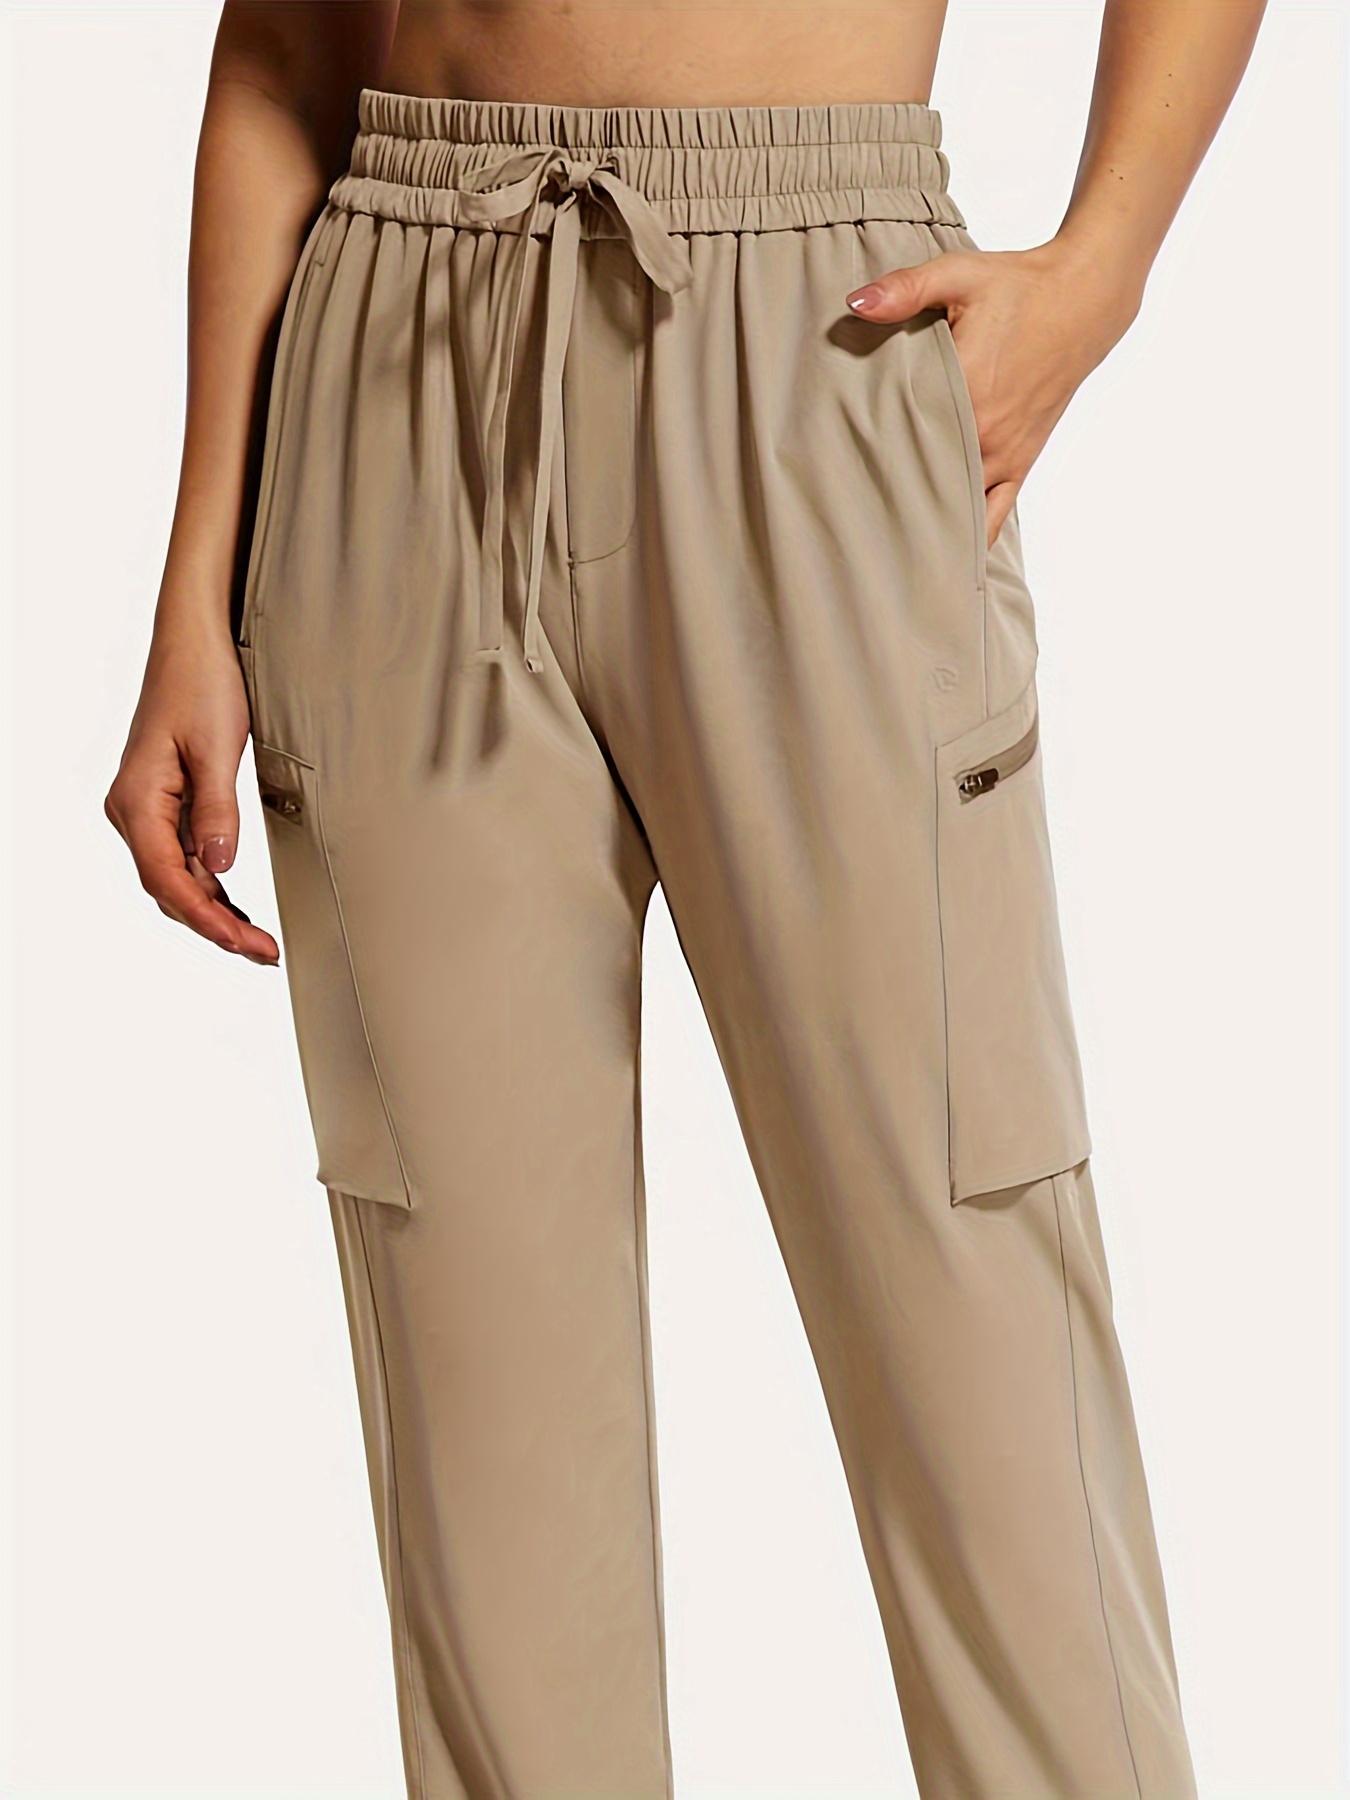 Women's Lounge Pants, UPF 50+